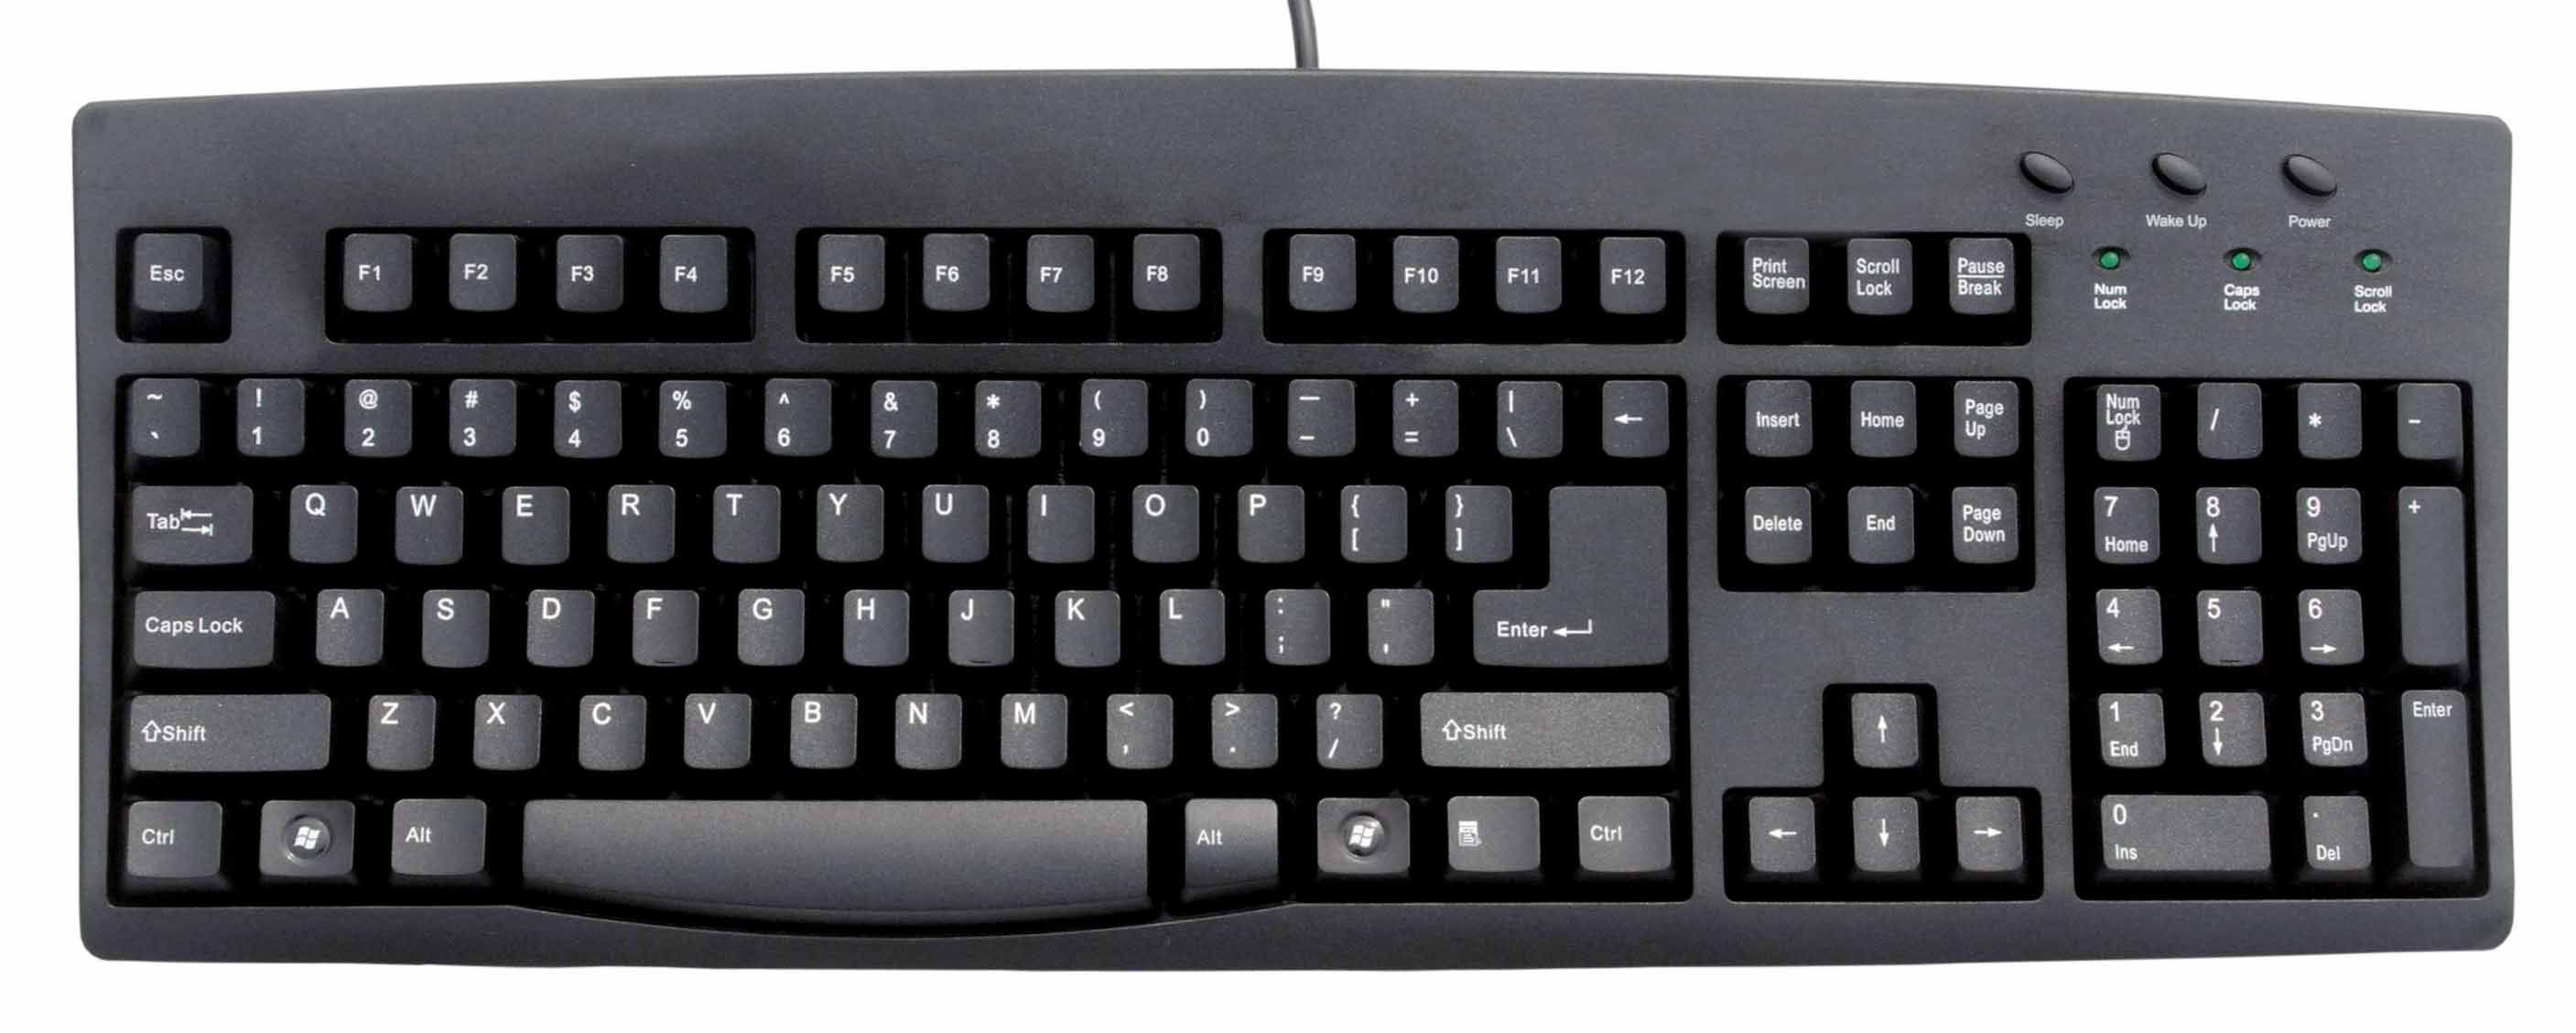 mr-mel-s-blog-computer-keyboards